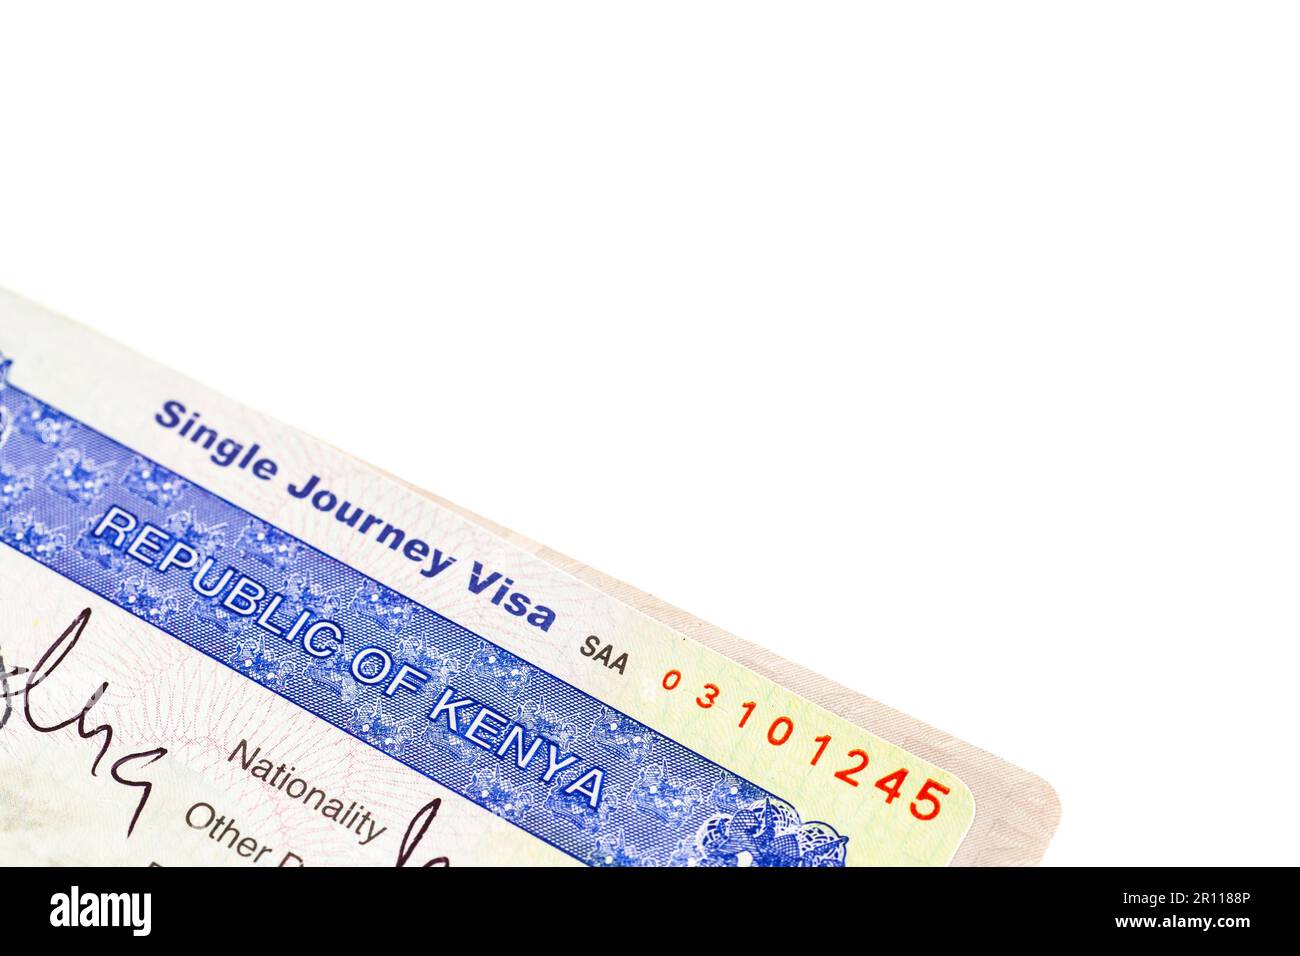 Detail of Kenya visa applied on passport Stock Photo